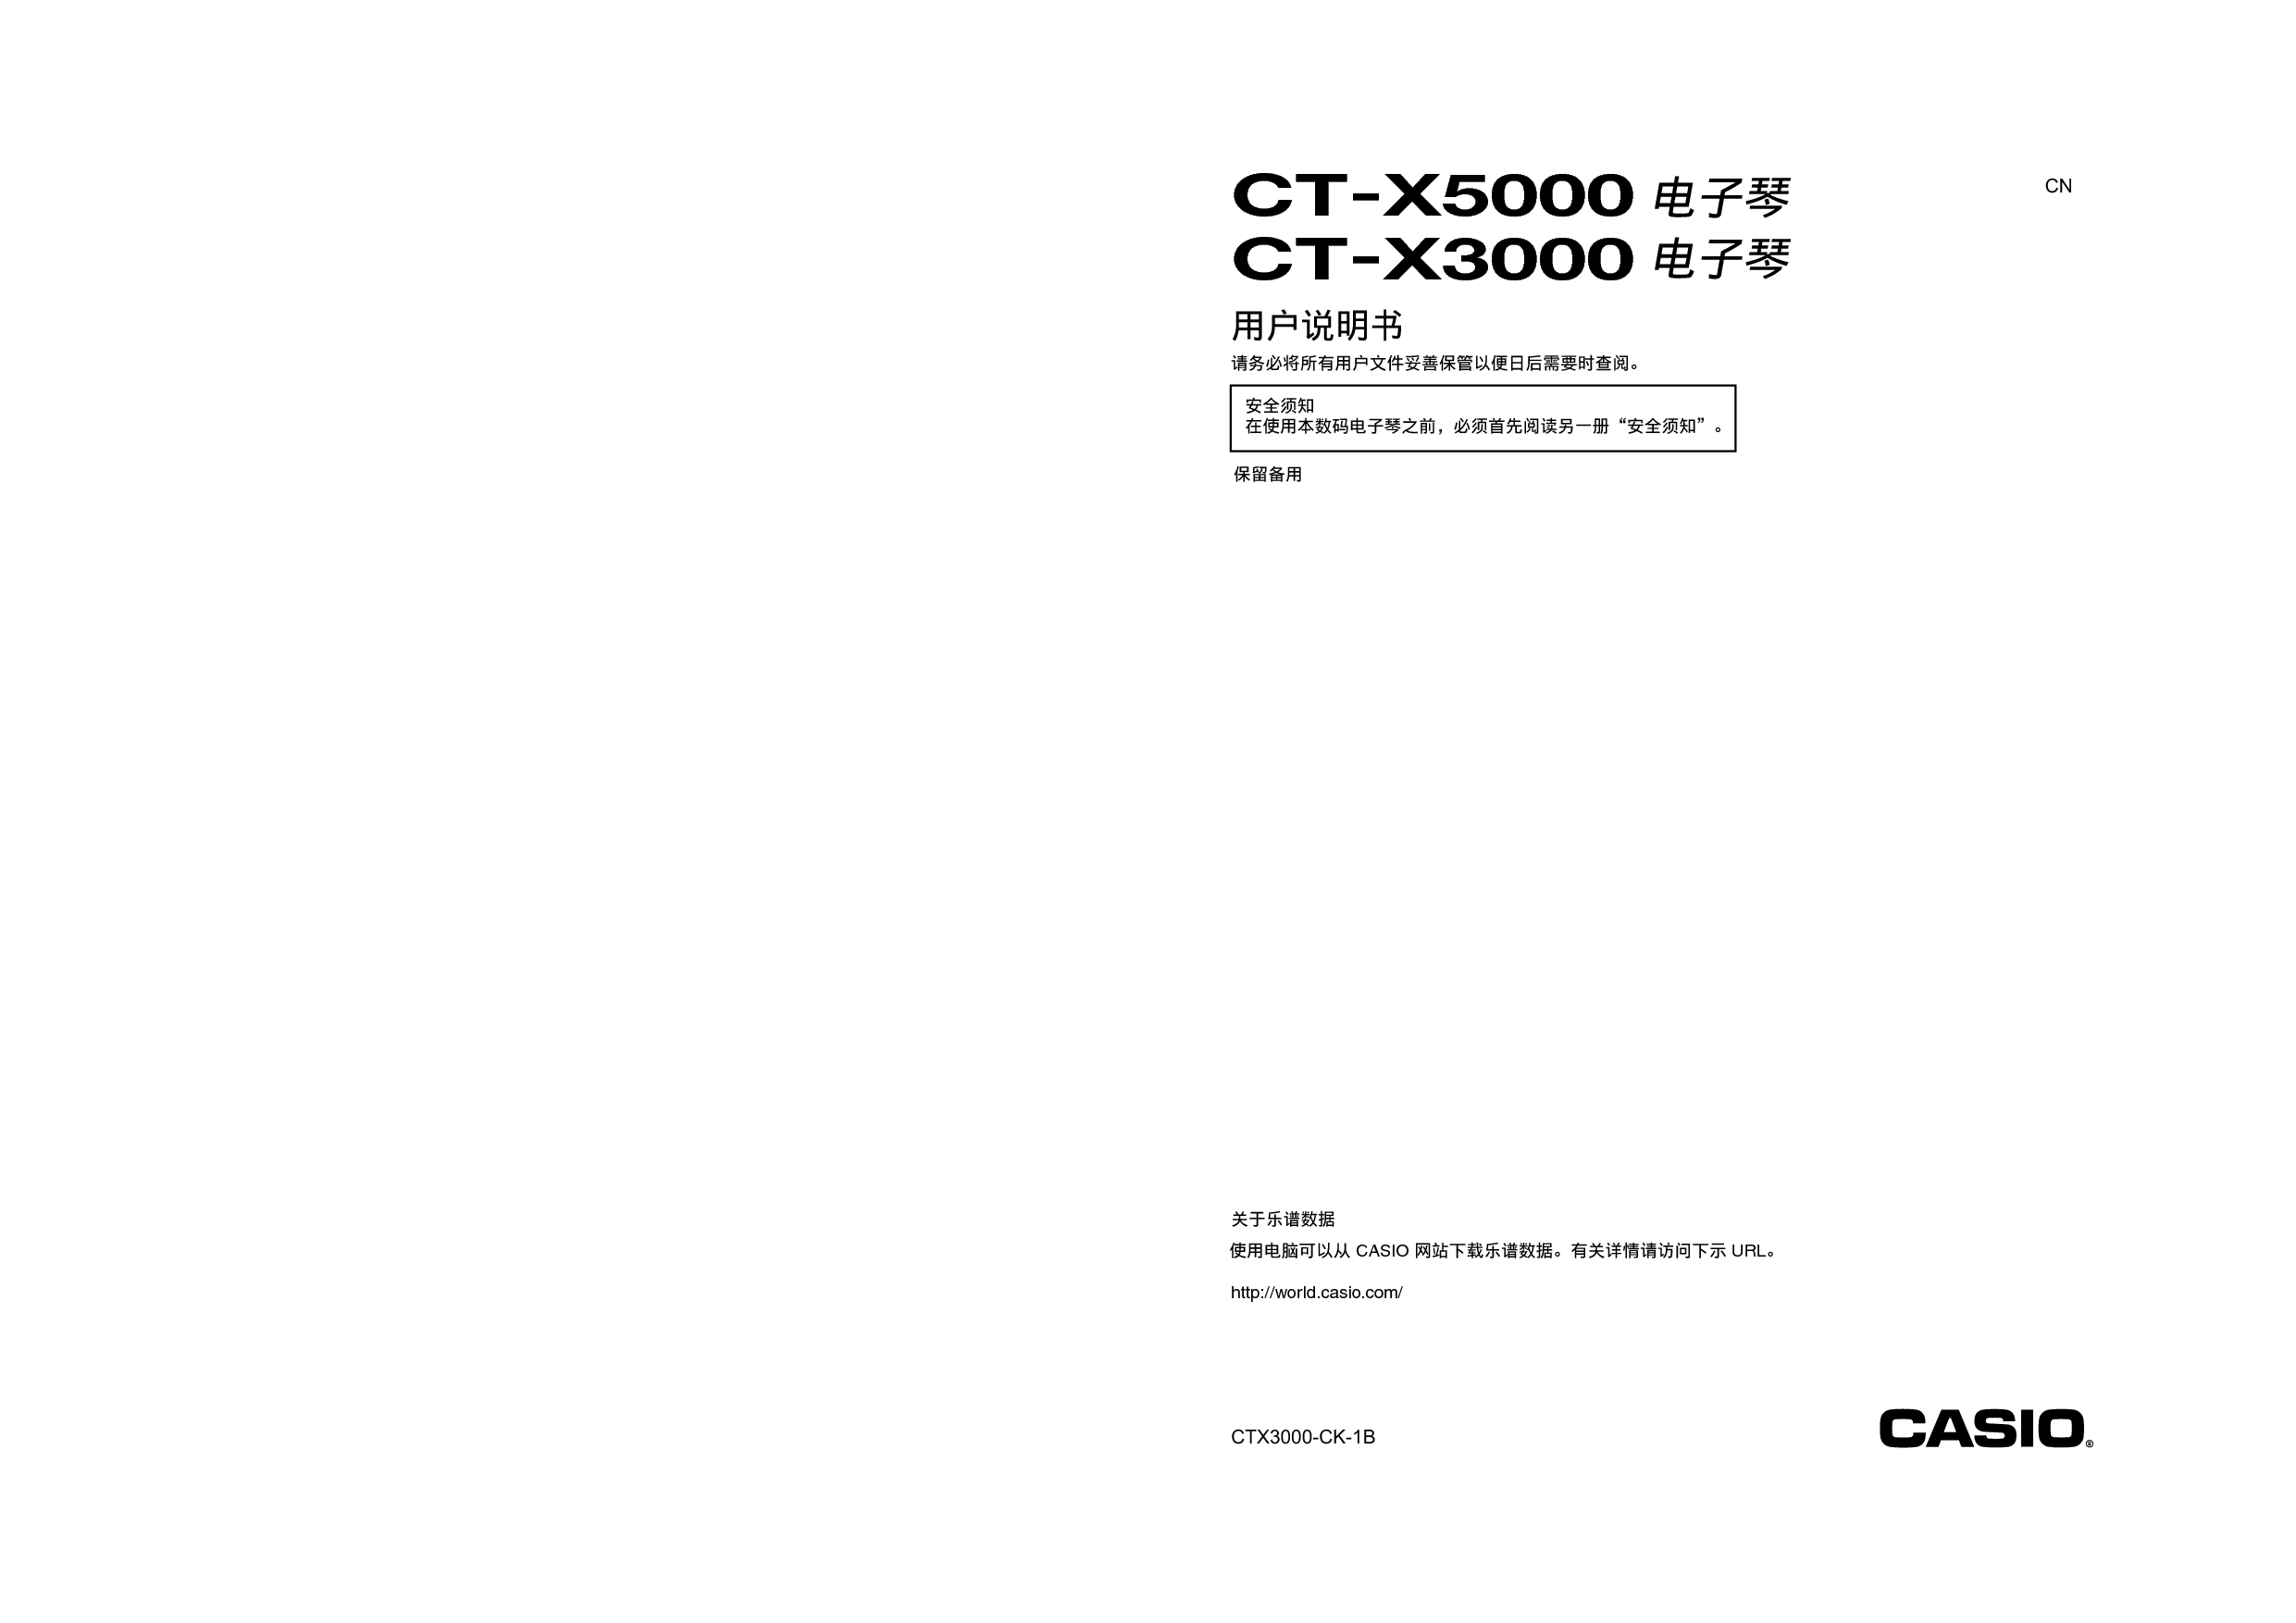 卡西欧 Casio CT-X3000 使用说明书 封面